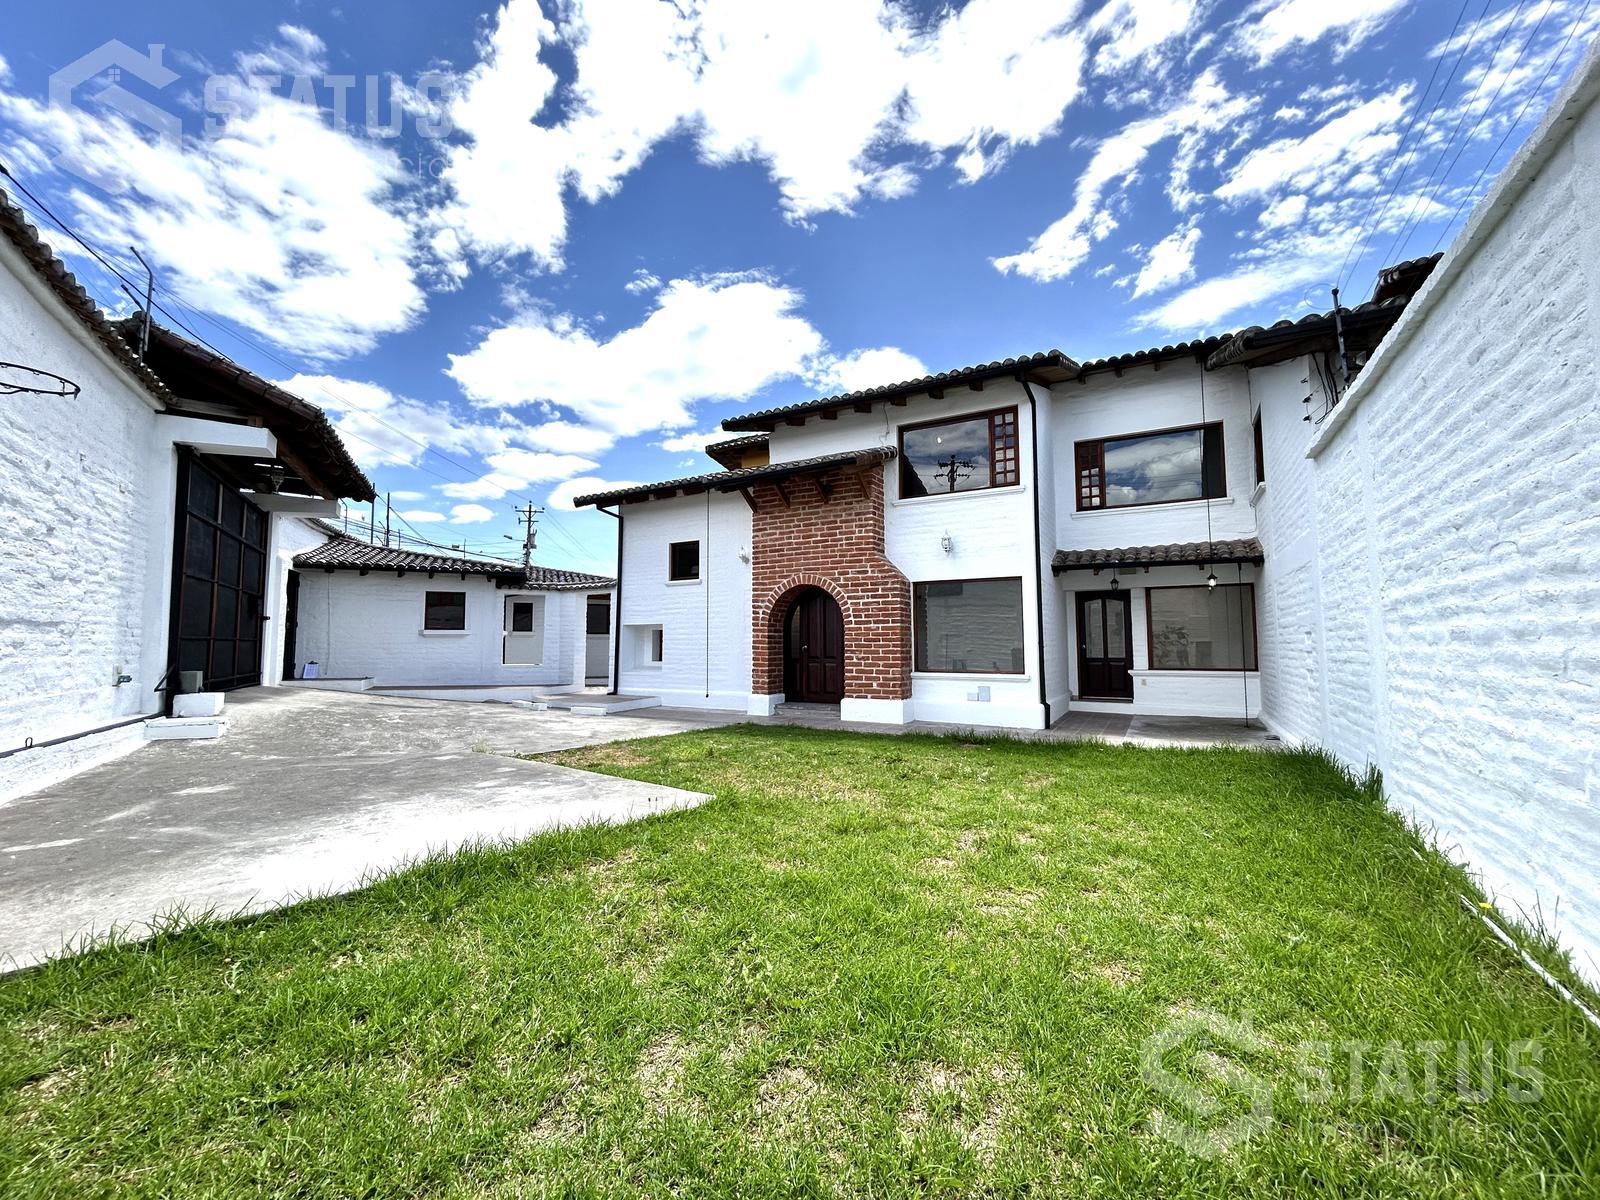 Se vende casa Independiente, terreno 1026 m, 3 Dorm., 3 Garajes, sector La Armenia II, $250.000